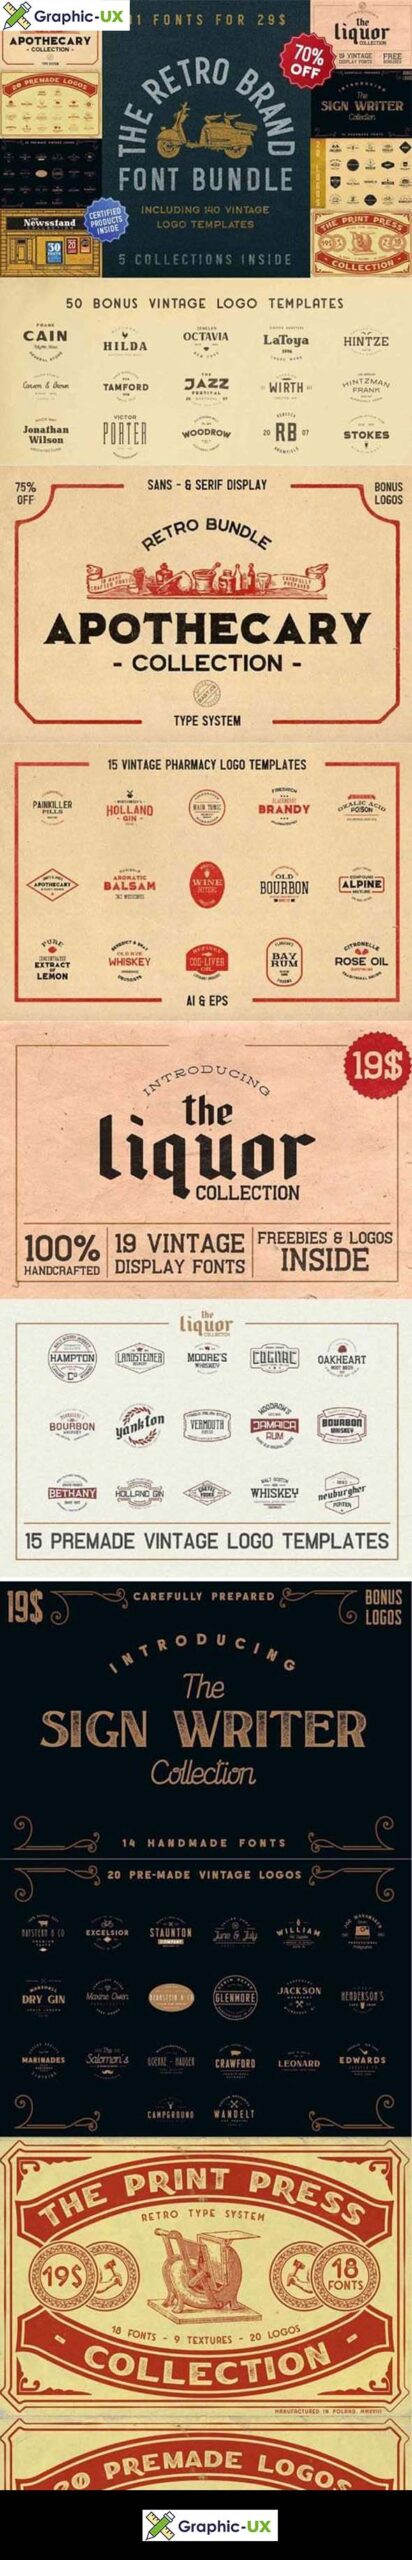 The Retro Brand Font Bundle [91 Fonts] + 140 Vintage Logo Templates